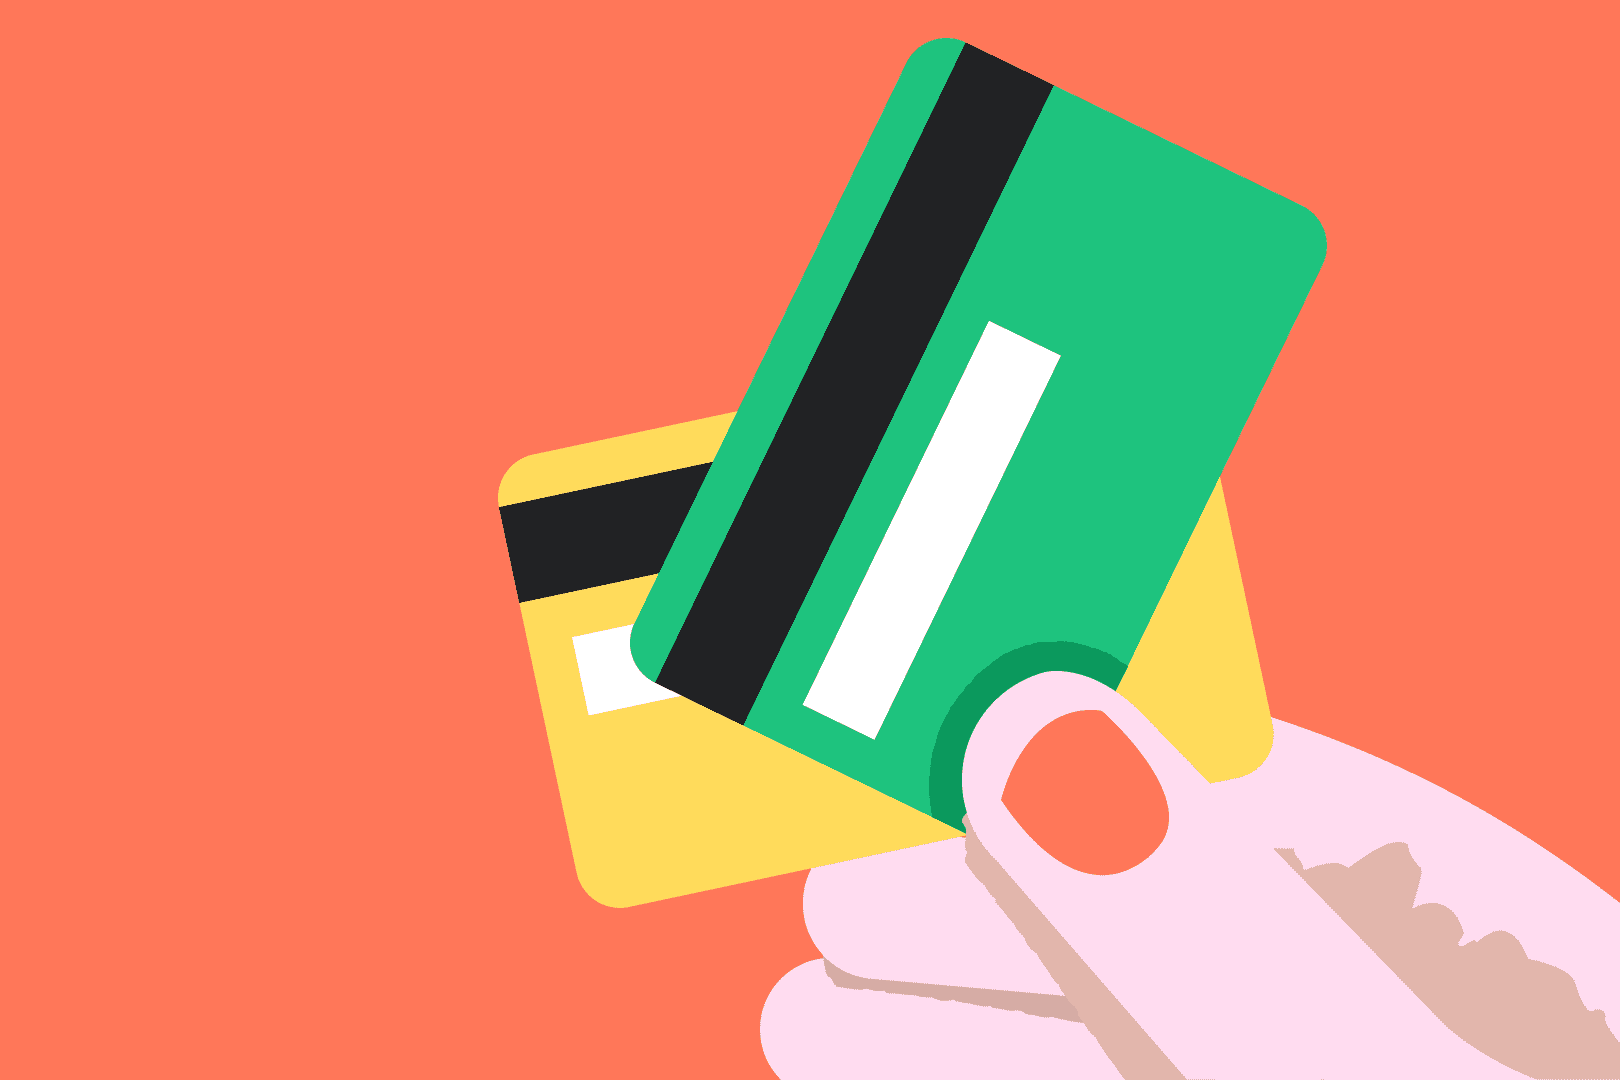 hånd som holder et gult og et grønt kredittkort